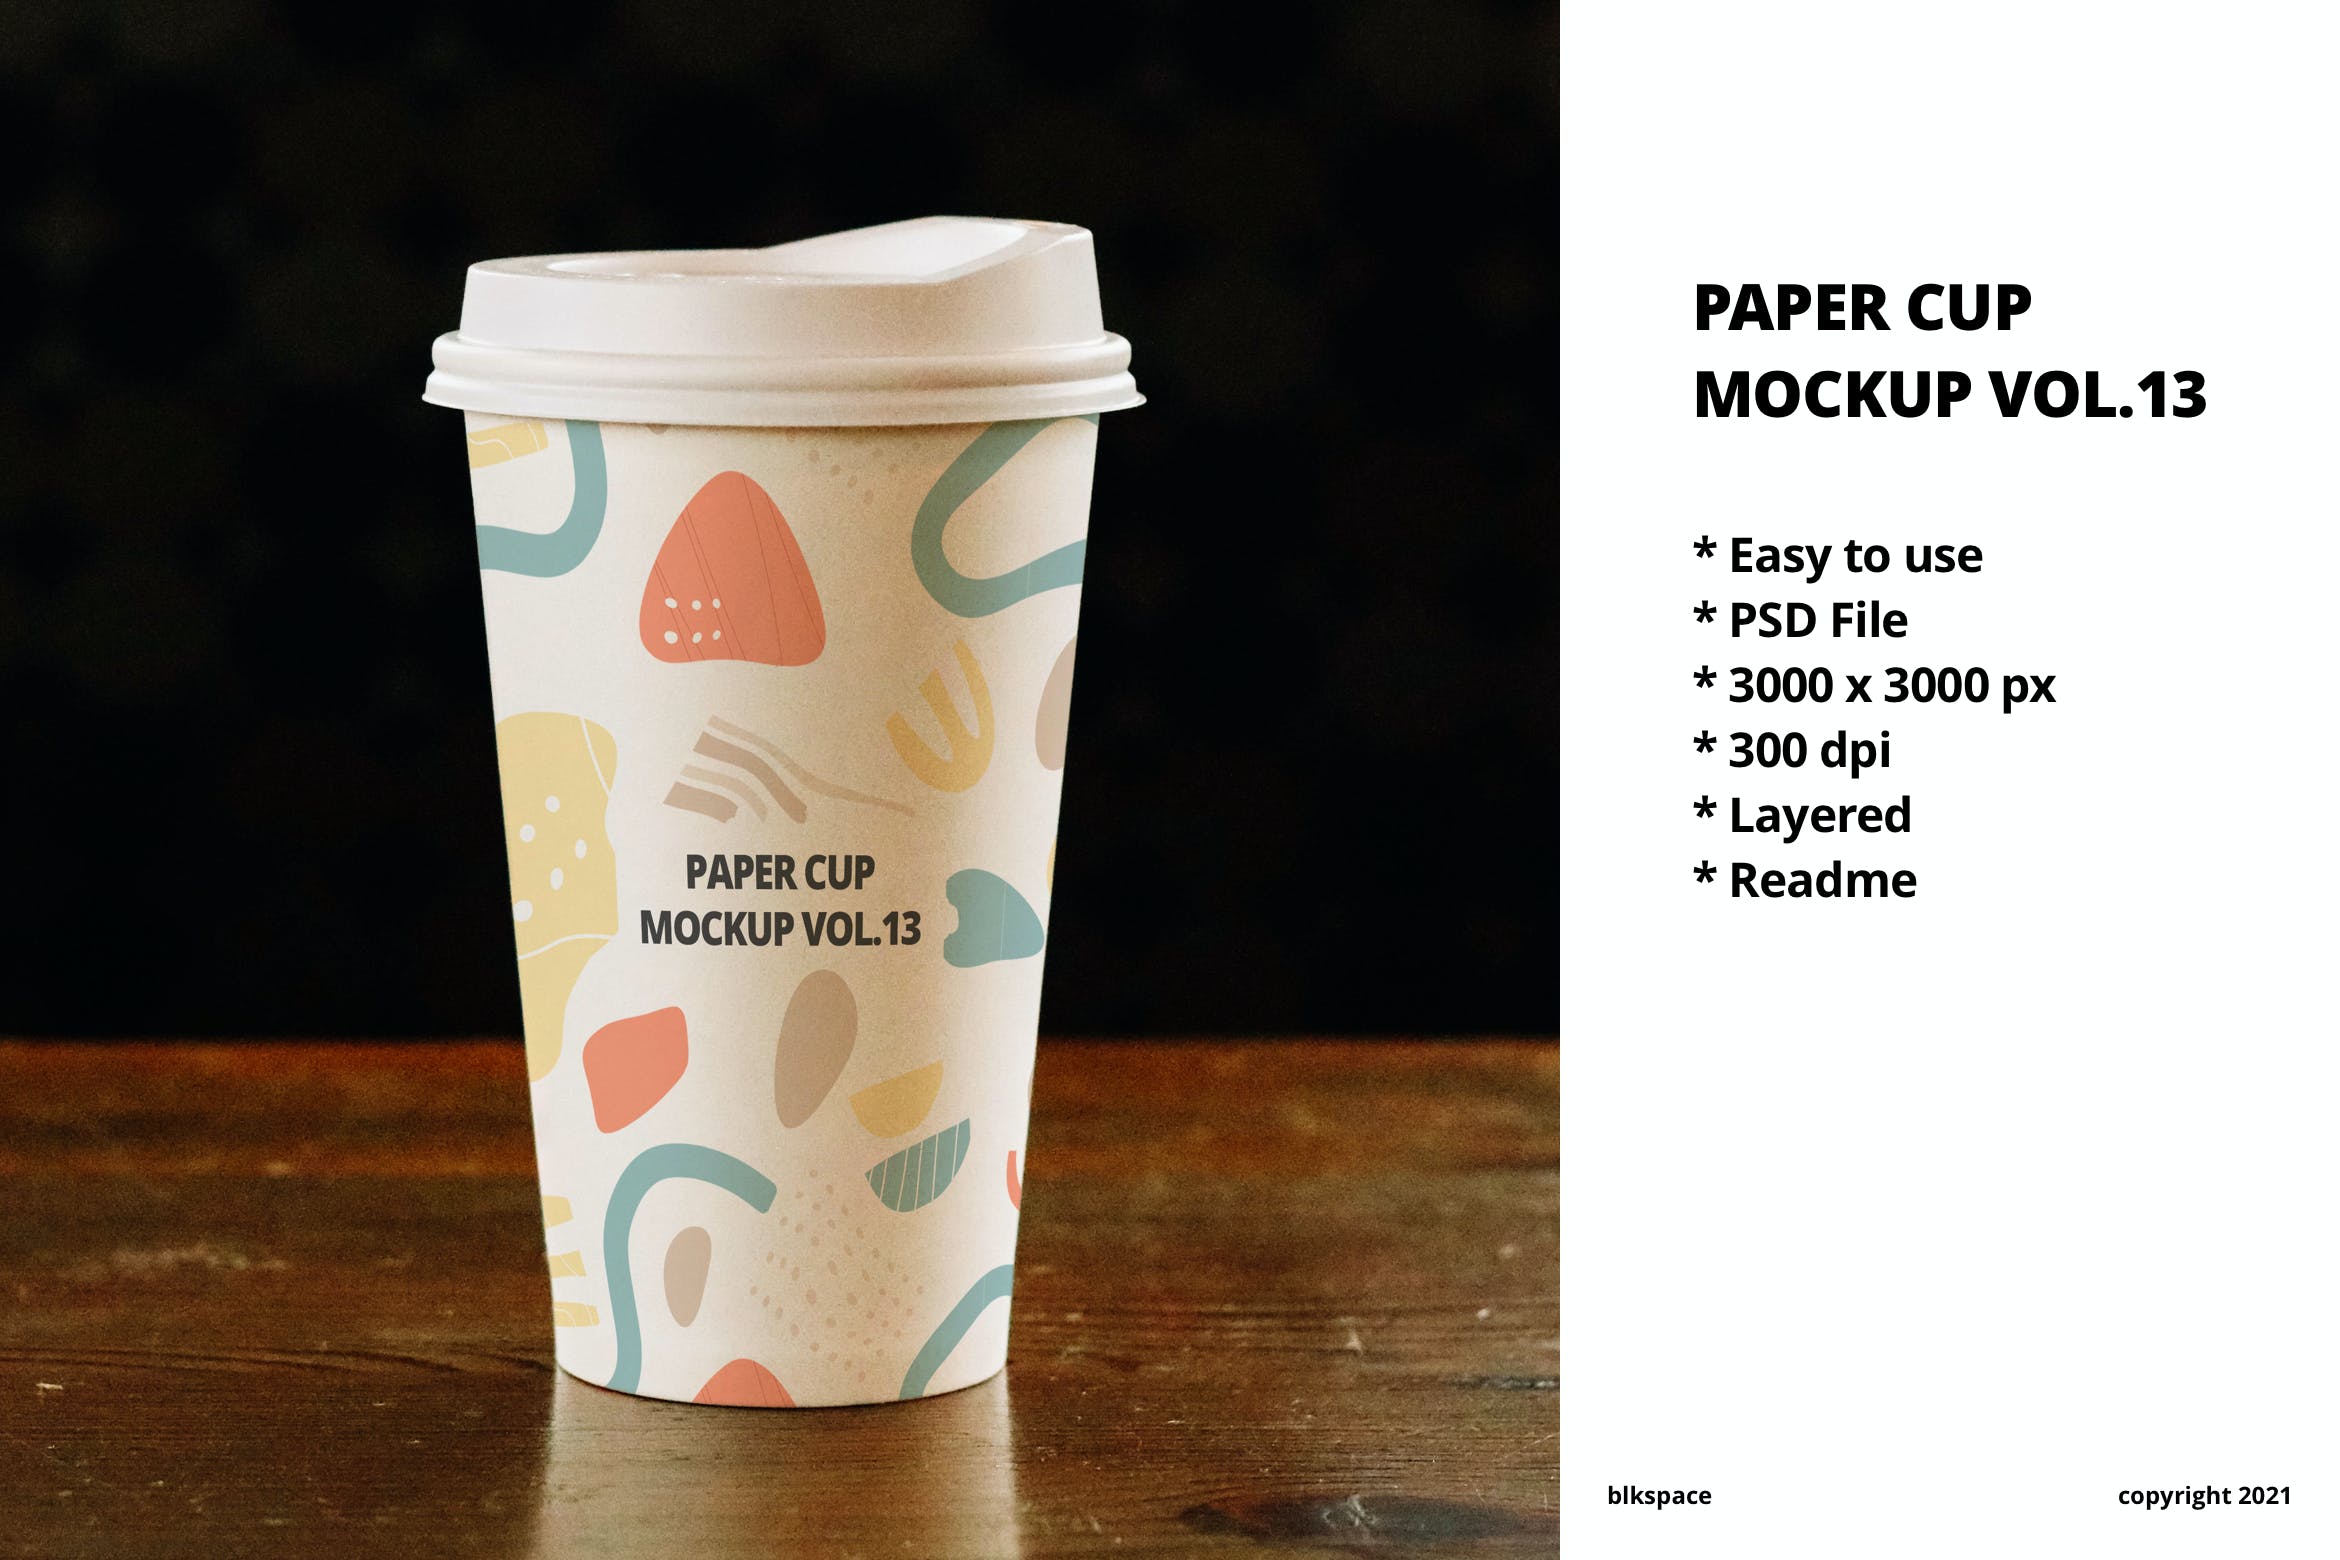 一次性纸杯咖啡杯品牌包装设计样机v13 Paper Cup Mockup Vol.13